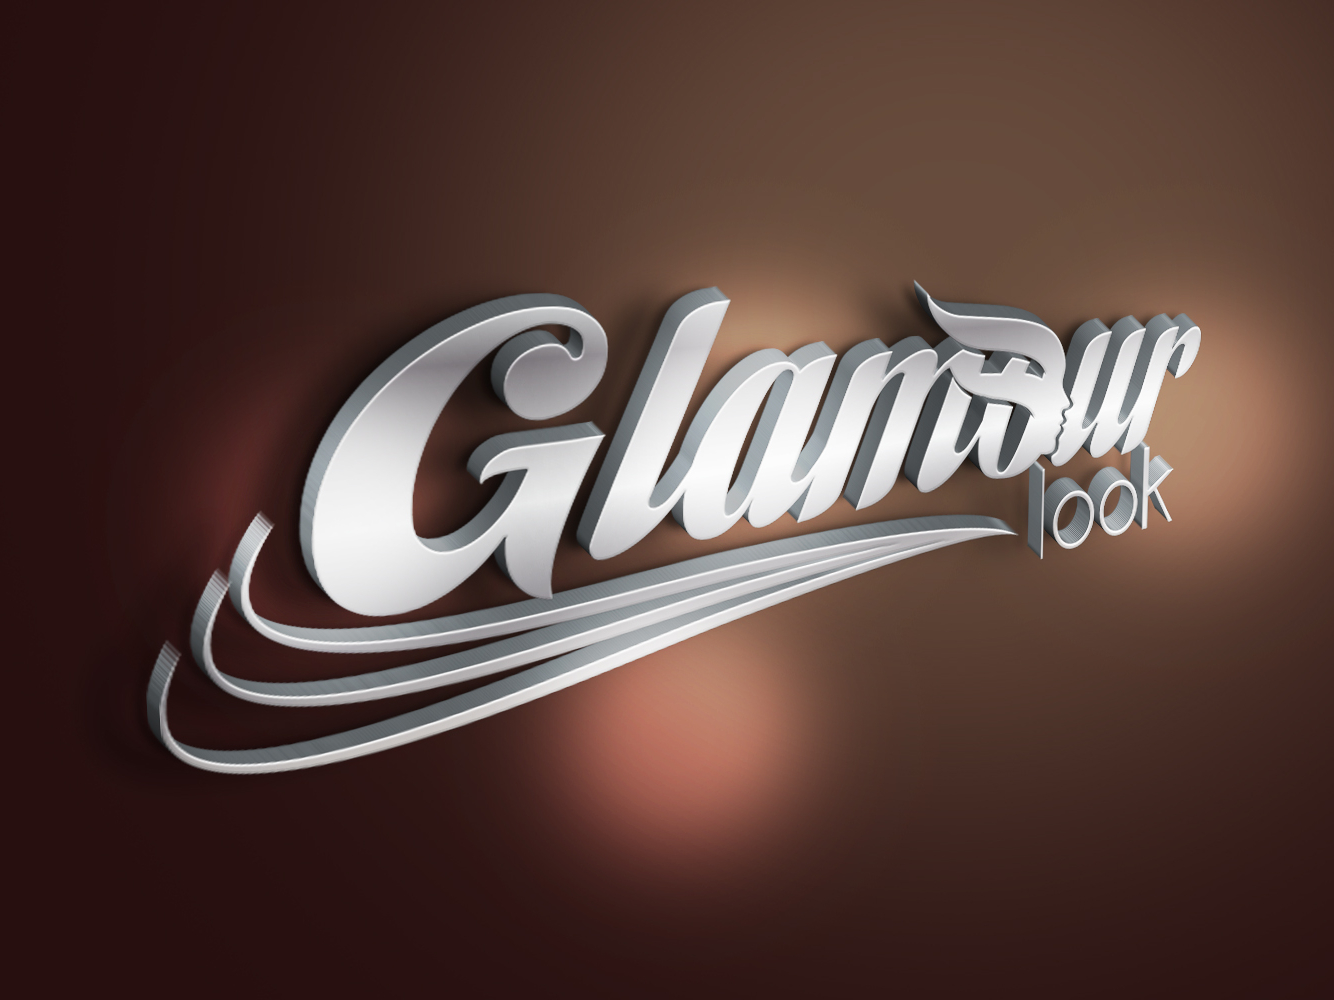 Logo Design Glamour Look Hairdresser Salon By Petar Dojranliev On Dribbble